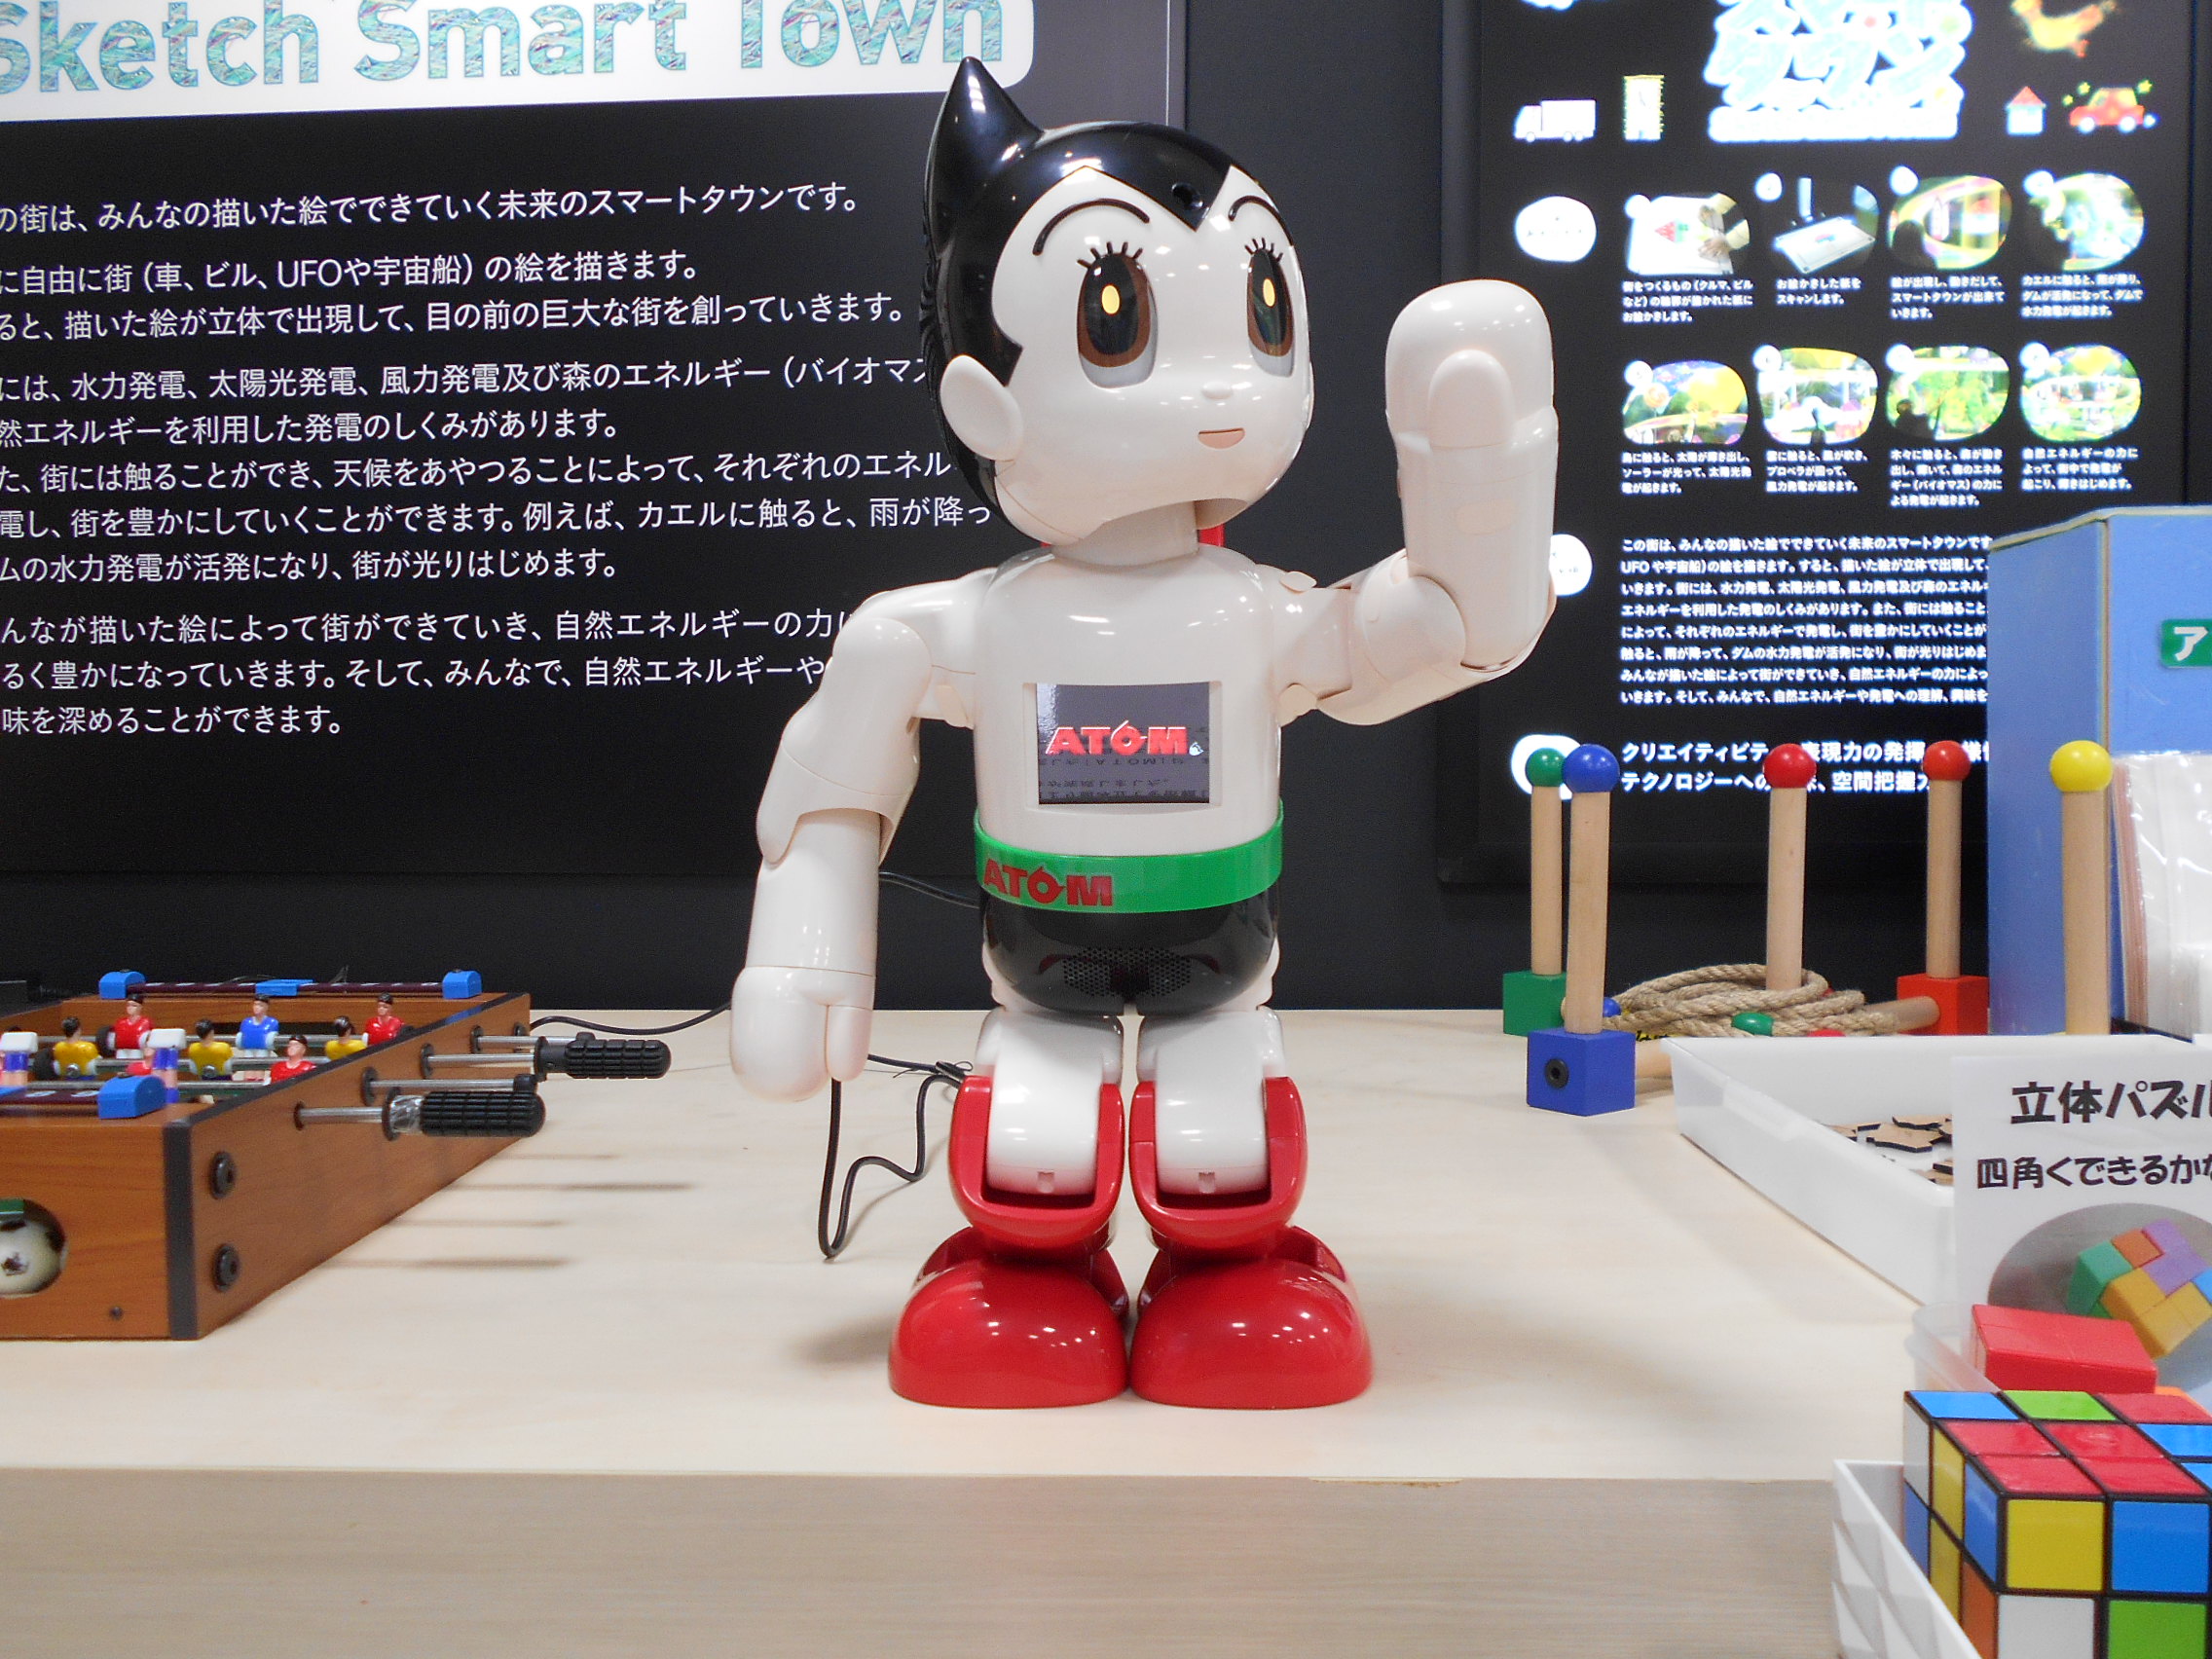 展示にロボット Atom が加わりました 川口ダム自然エネルギーミュージアム